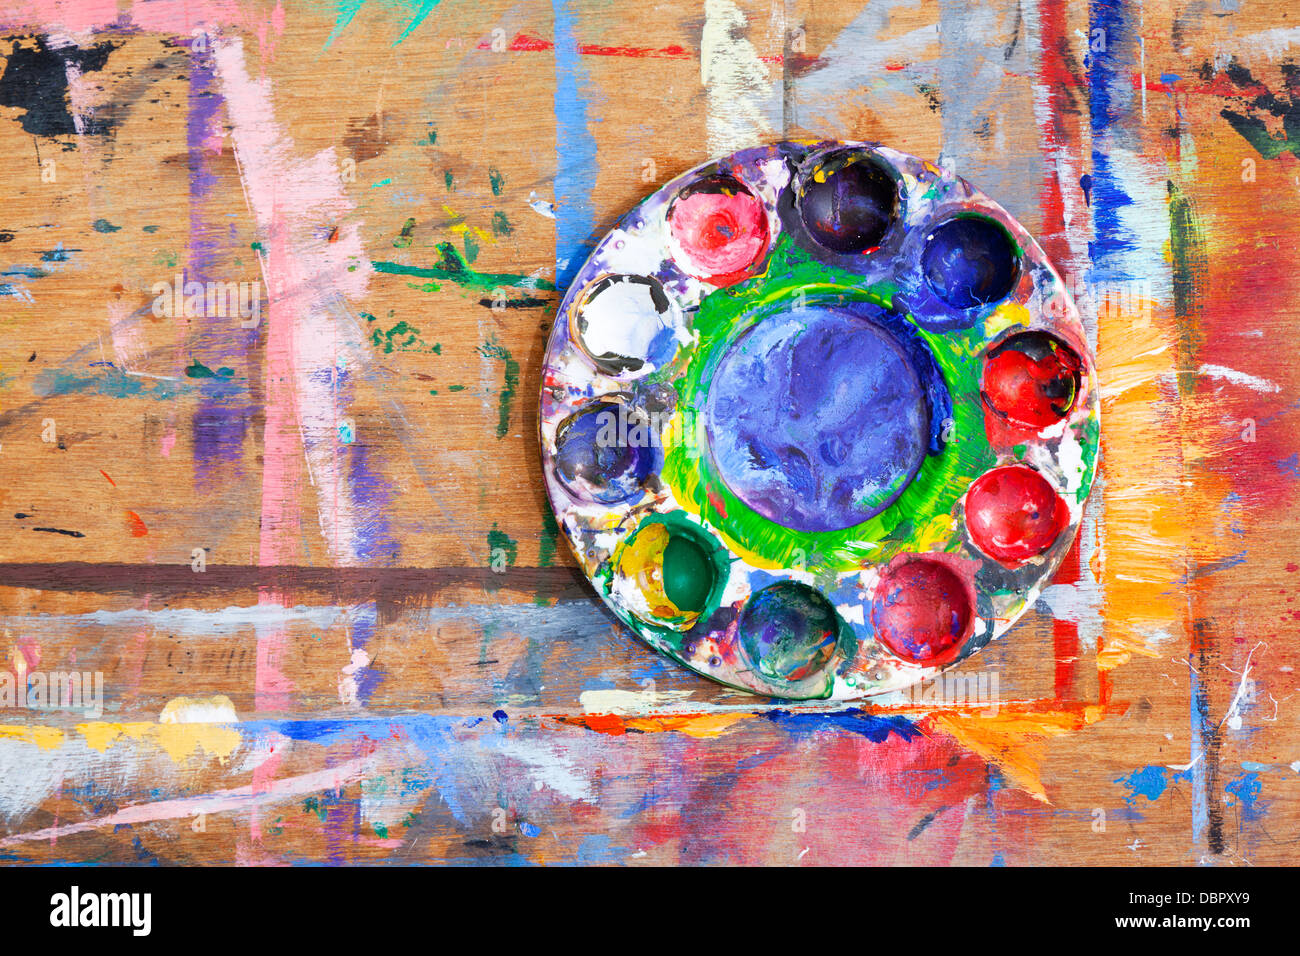 Close-up of a multi-couleur de peinture en plastique sur une planche de bois éclaboussé de peinture. Banque D'Images